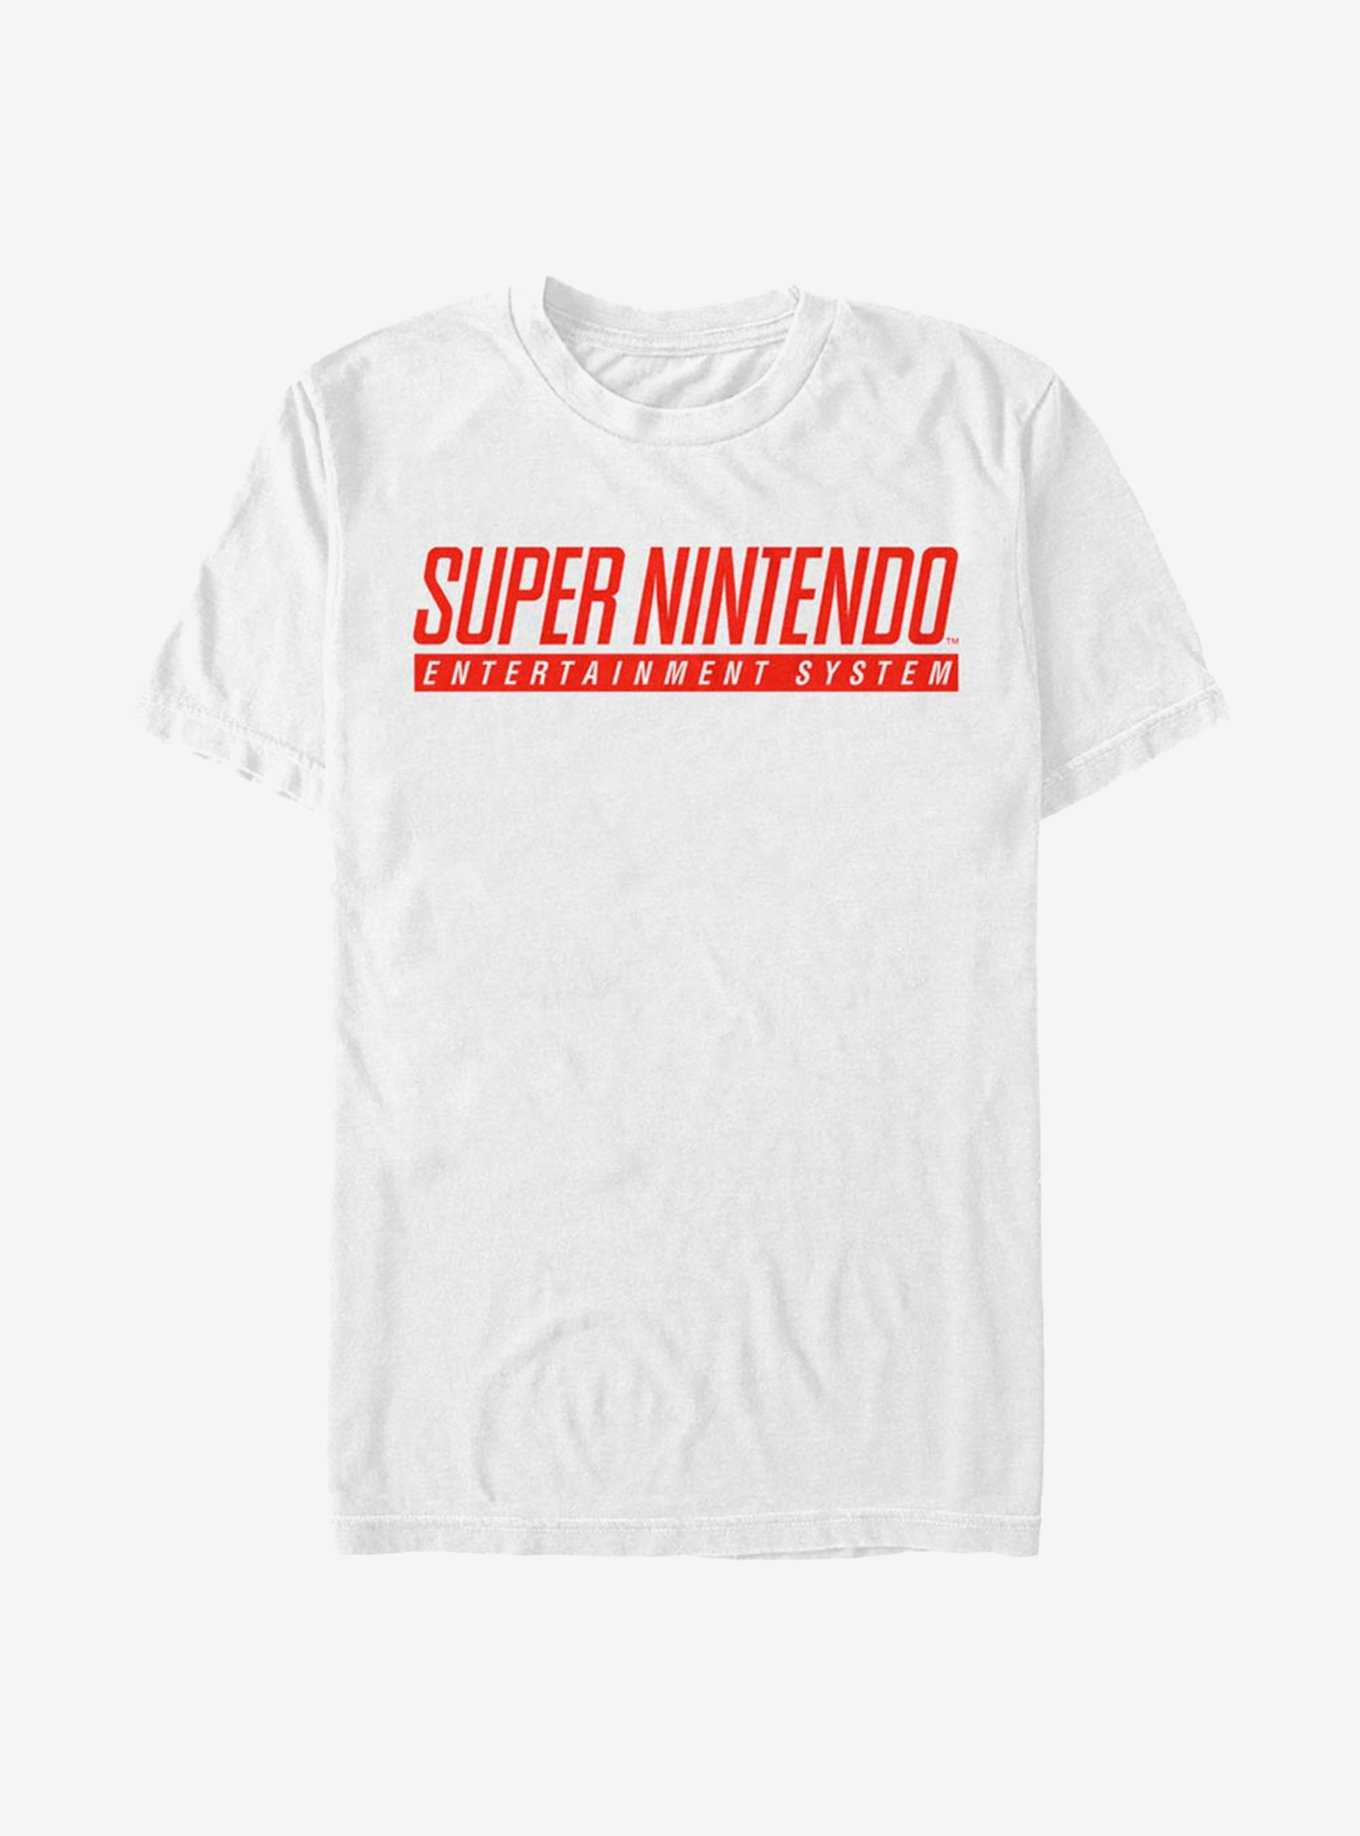 Nintendo Super Nintendo Logo T-Shirt, , hi-res